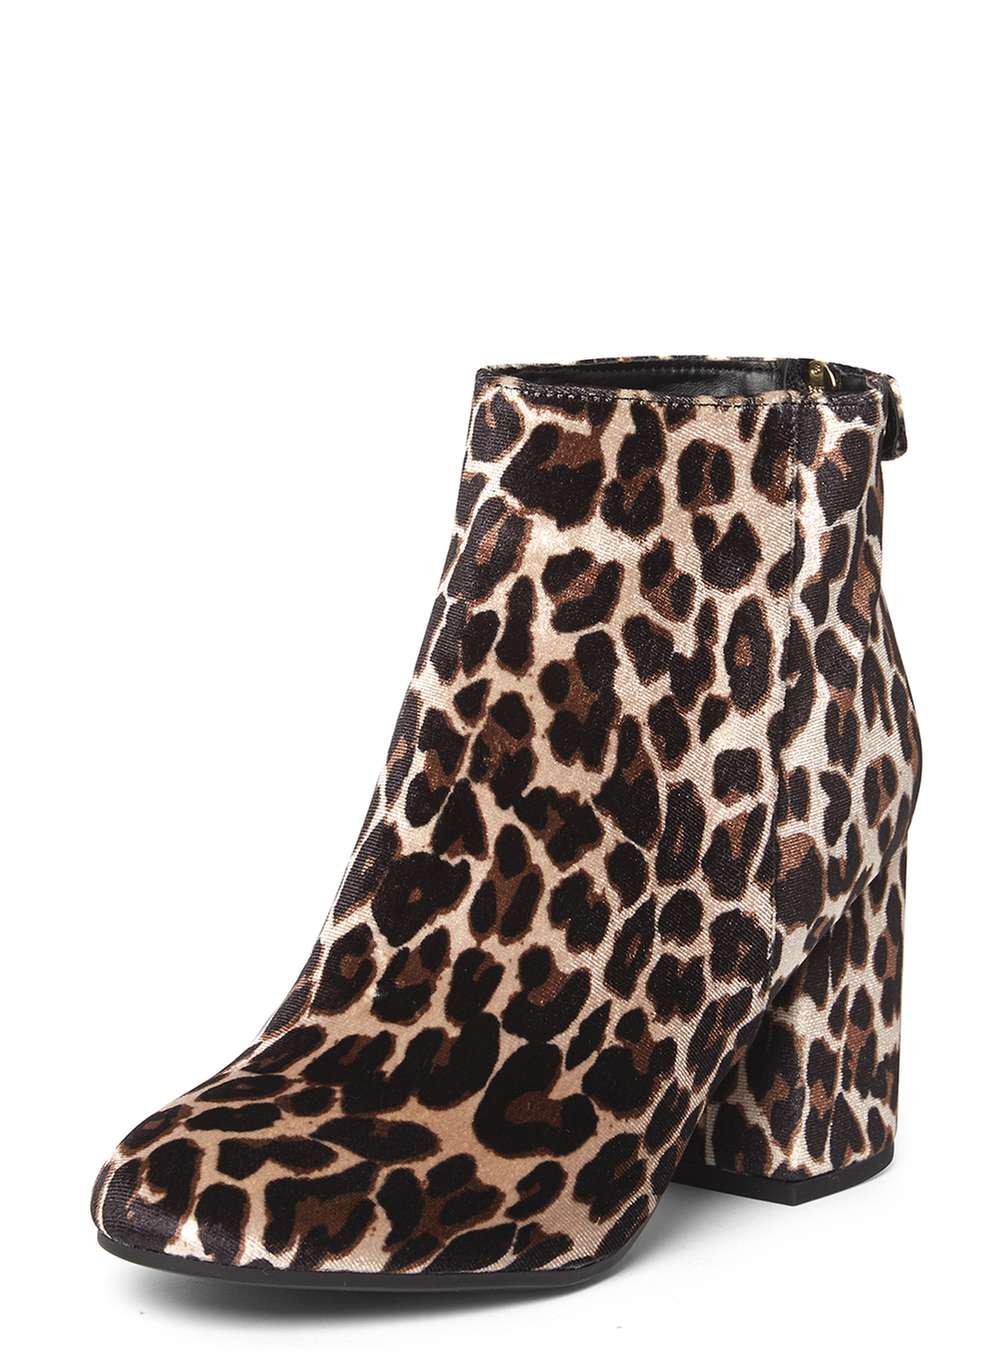 dorothy perkins leopard boots